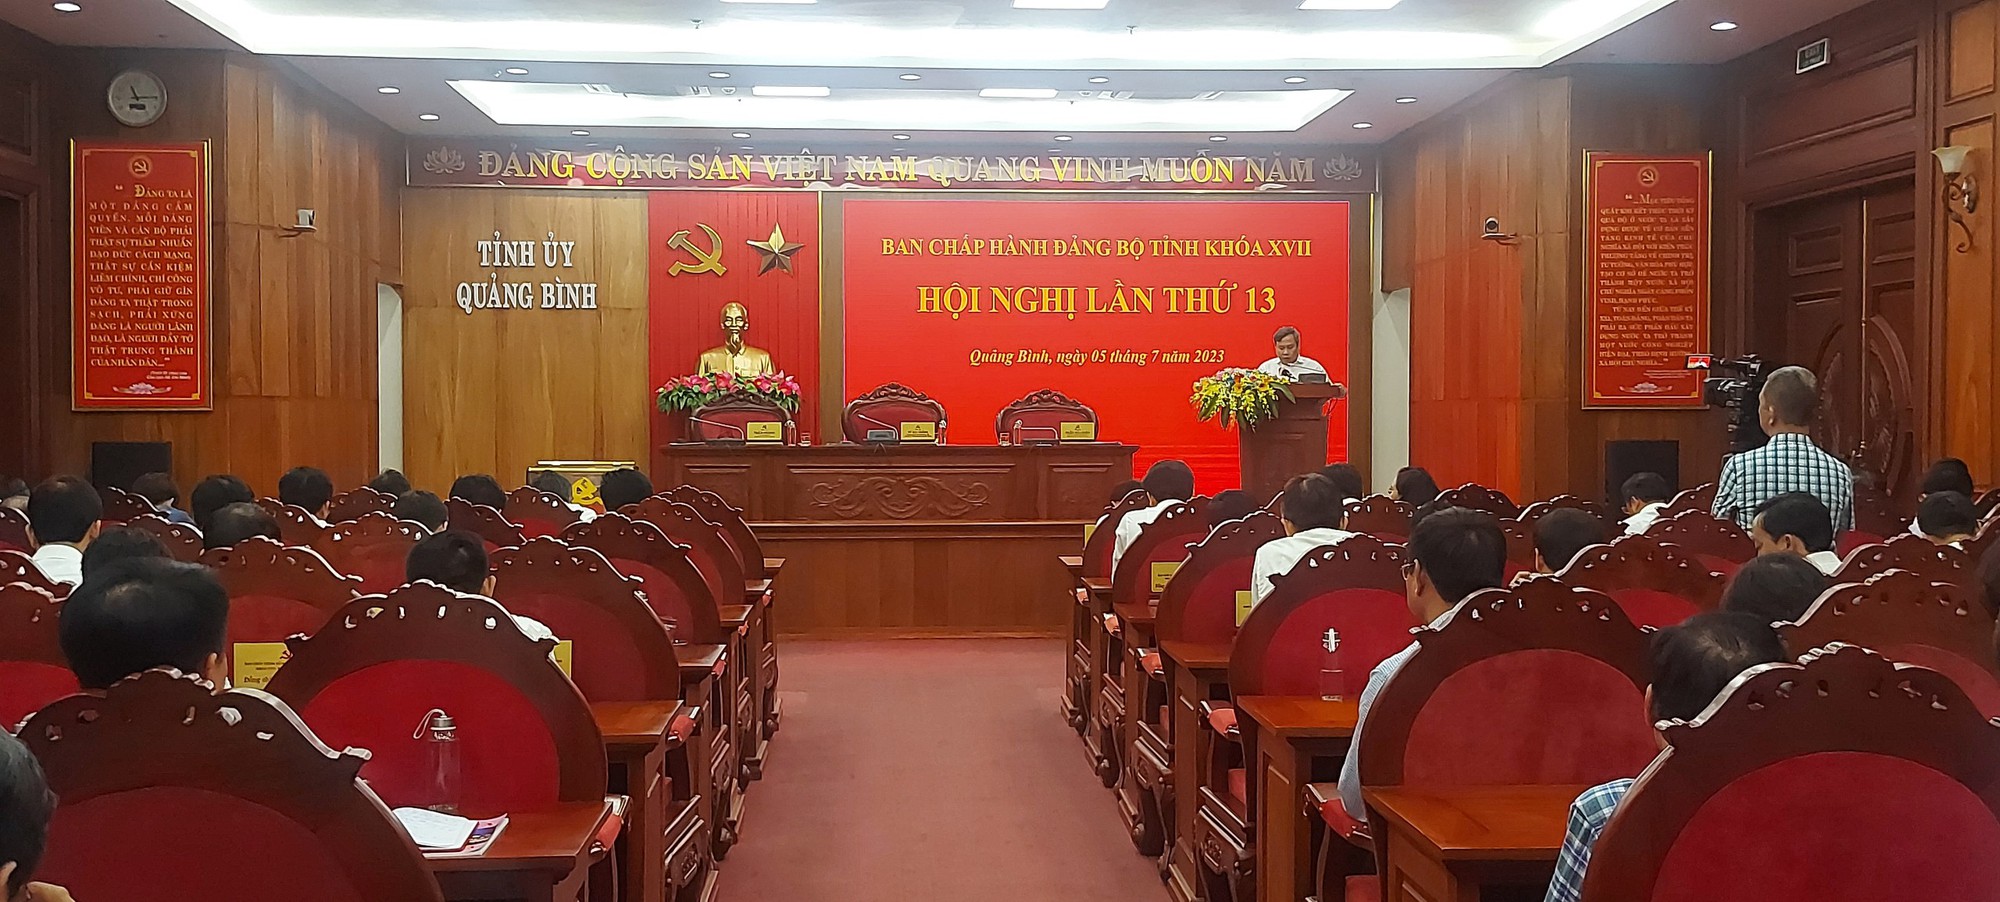 139 đảng viên tại Quảng Bình bị kỷ luật trong 6 tháng đầu năm 2023 - Ảnh 1.